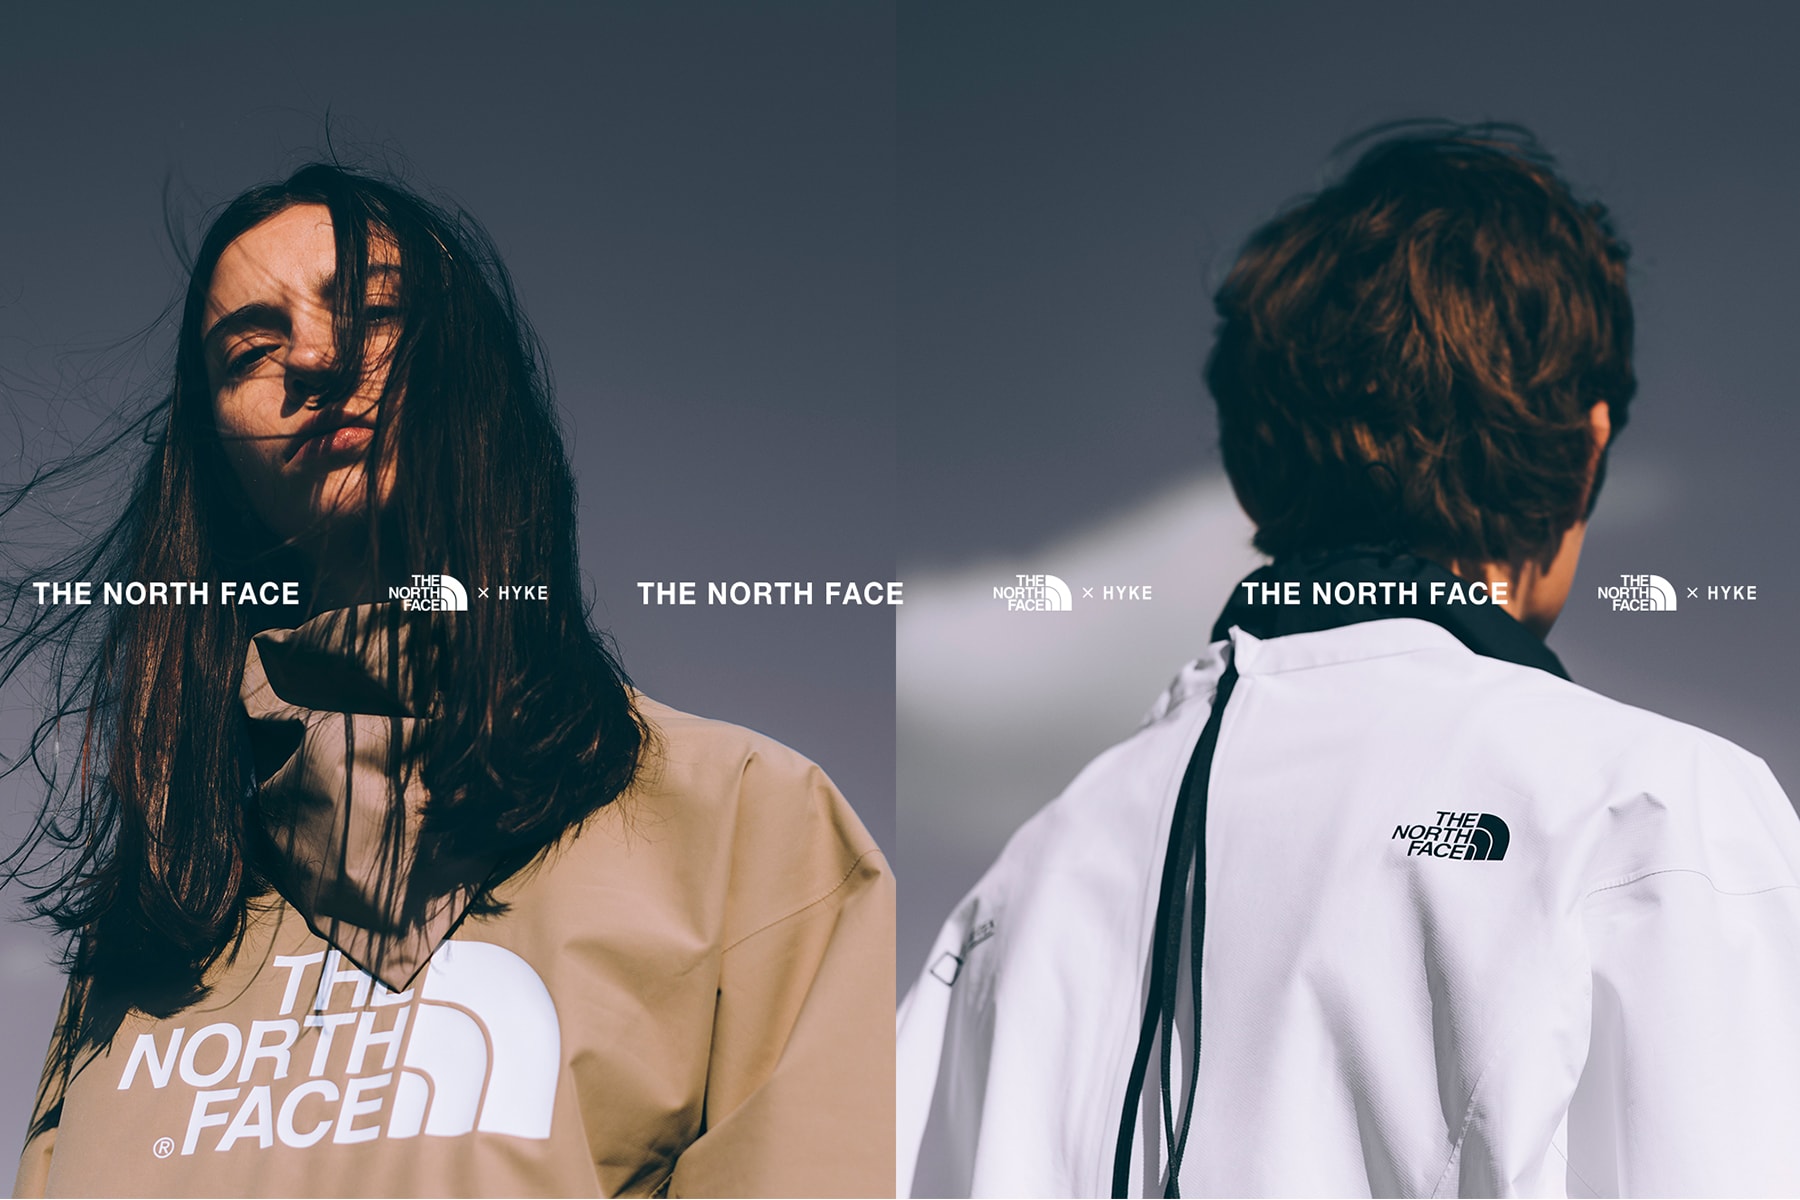 THE NORTH FACE x HYKE ハイク ノースフェイス メンズ ライン 2019年春夏 コレクション